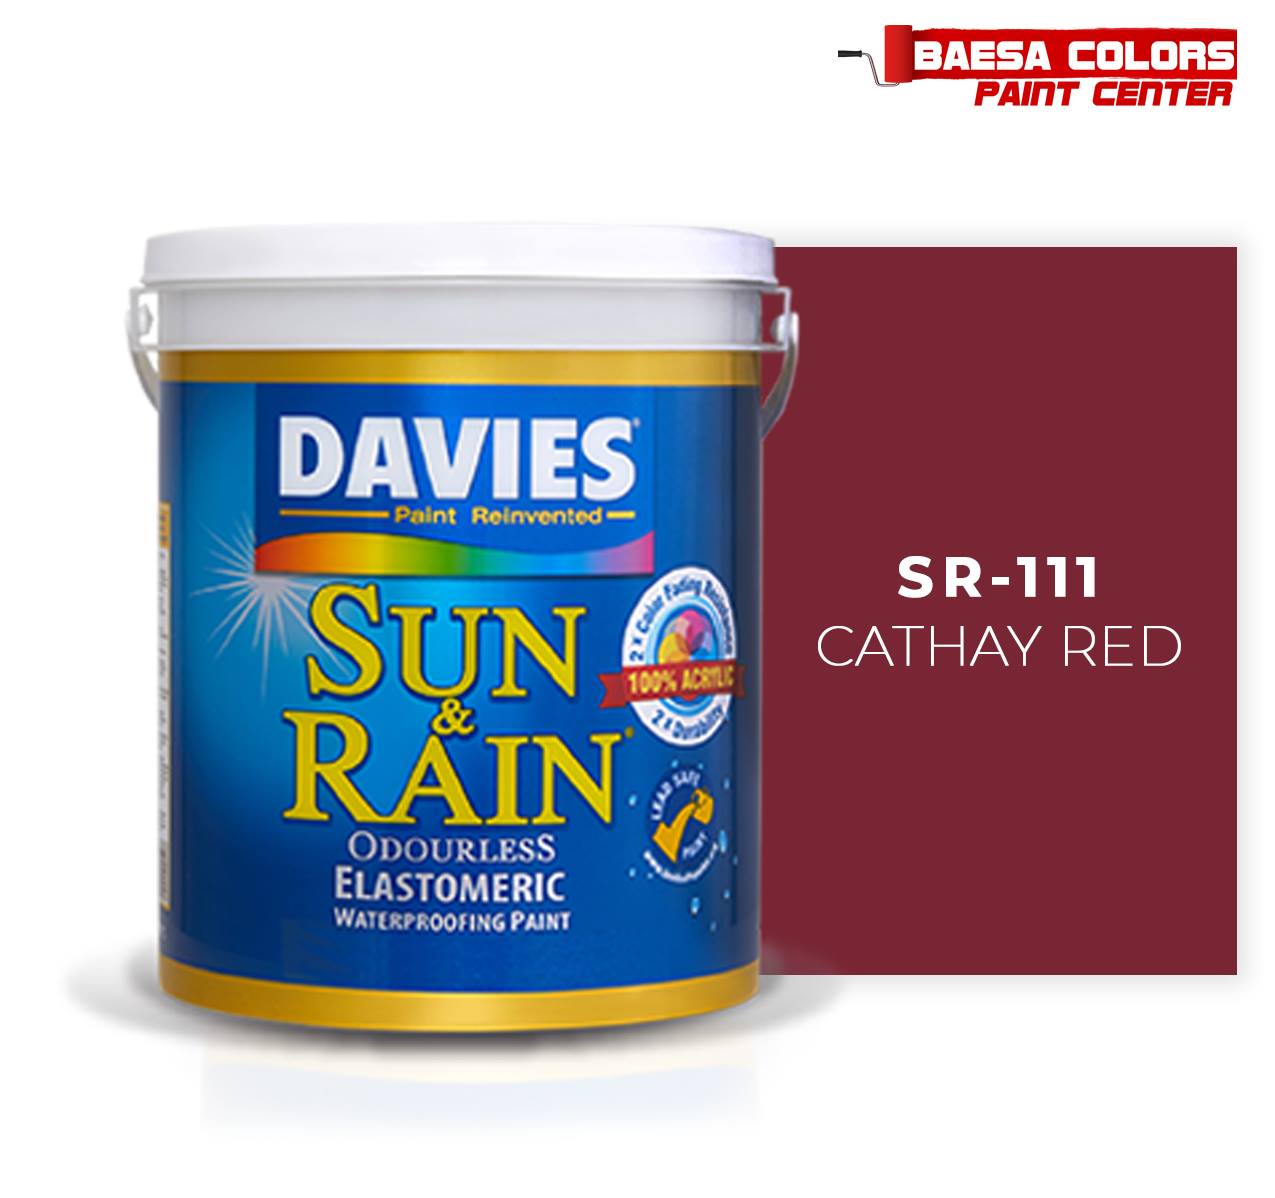 DAVIES® SUN & RAIN® 111 Cathay Red Elastomeric Paint